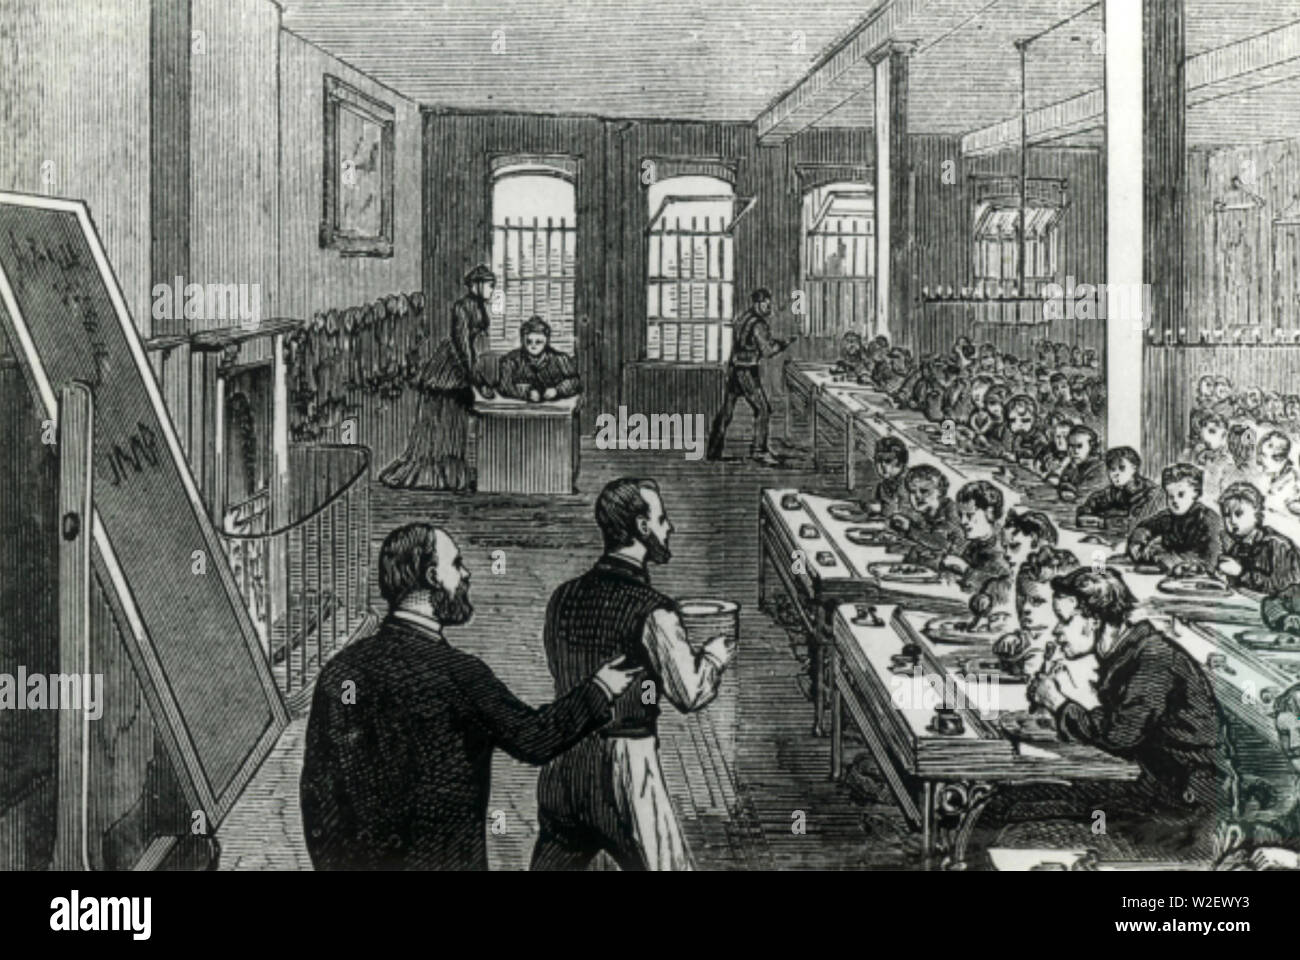 RAGGED aula scolastica in corrispondenza di una carità organizzazione scuole fornendo istruzione gratuita per bambini indigenti nella metà del XIX secolo in Inghilterra. Foto Stock